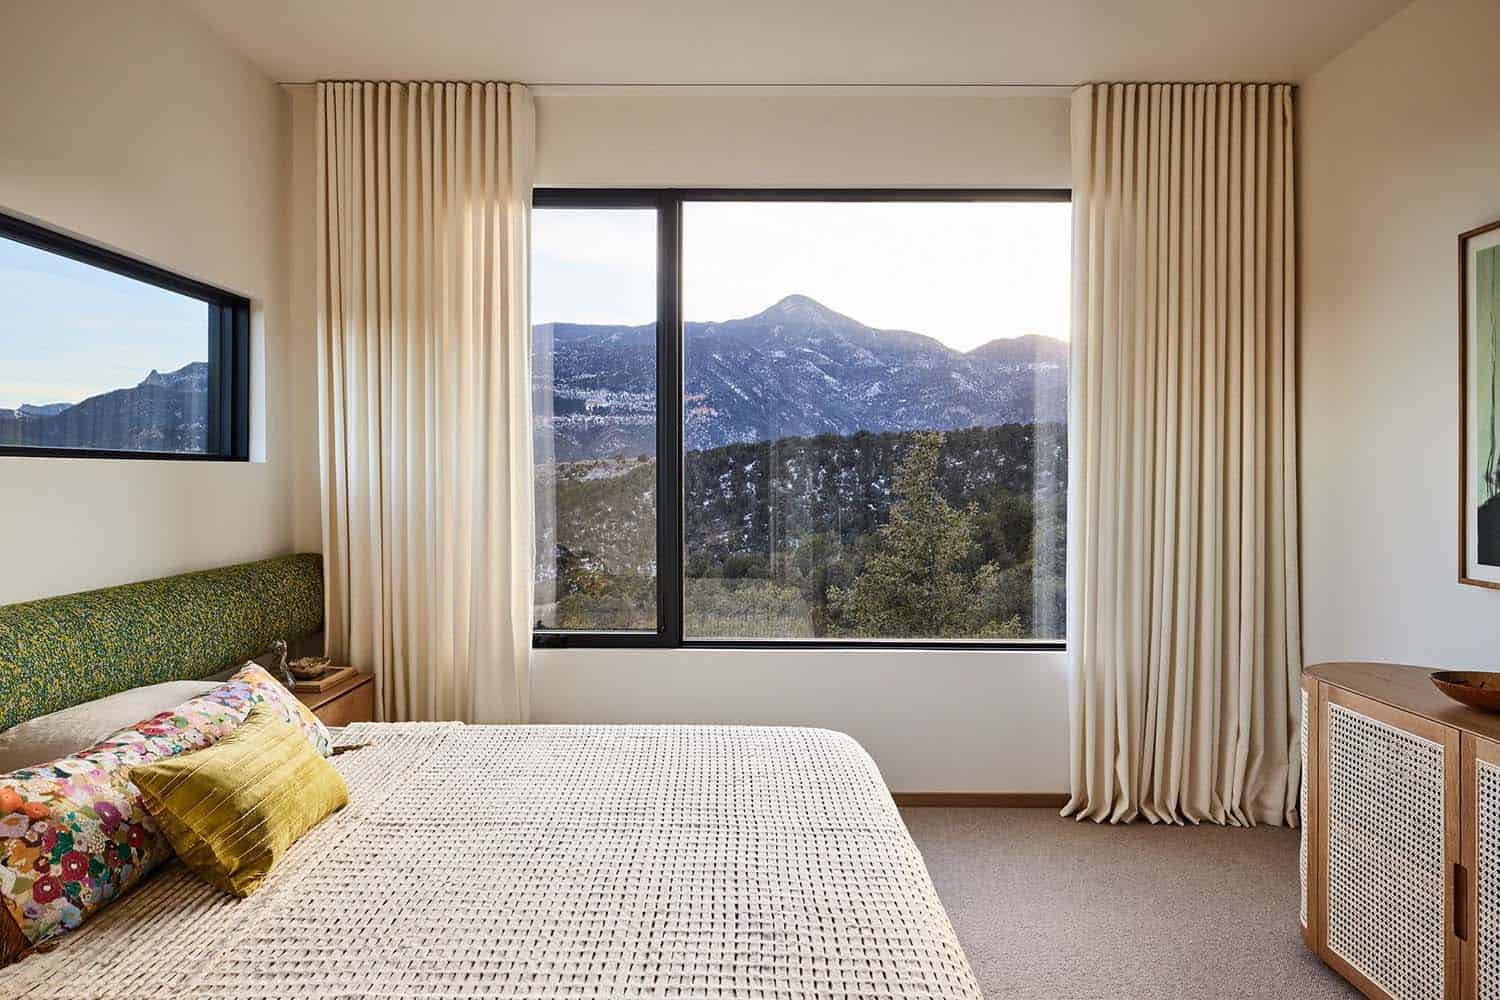 modern-minimalist-bedroom